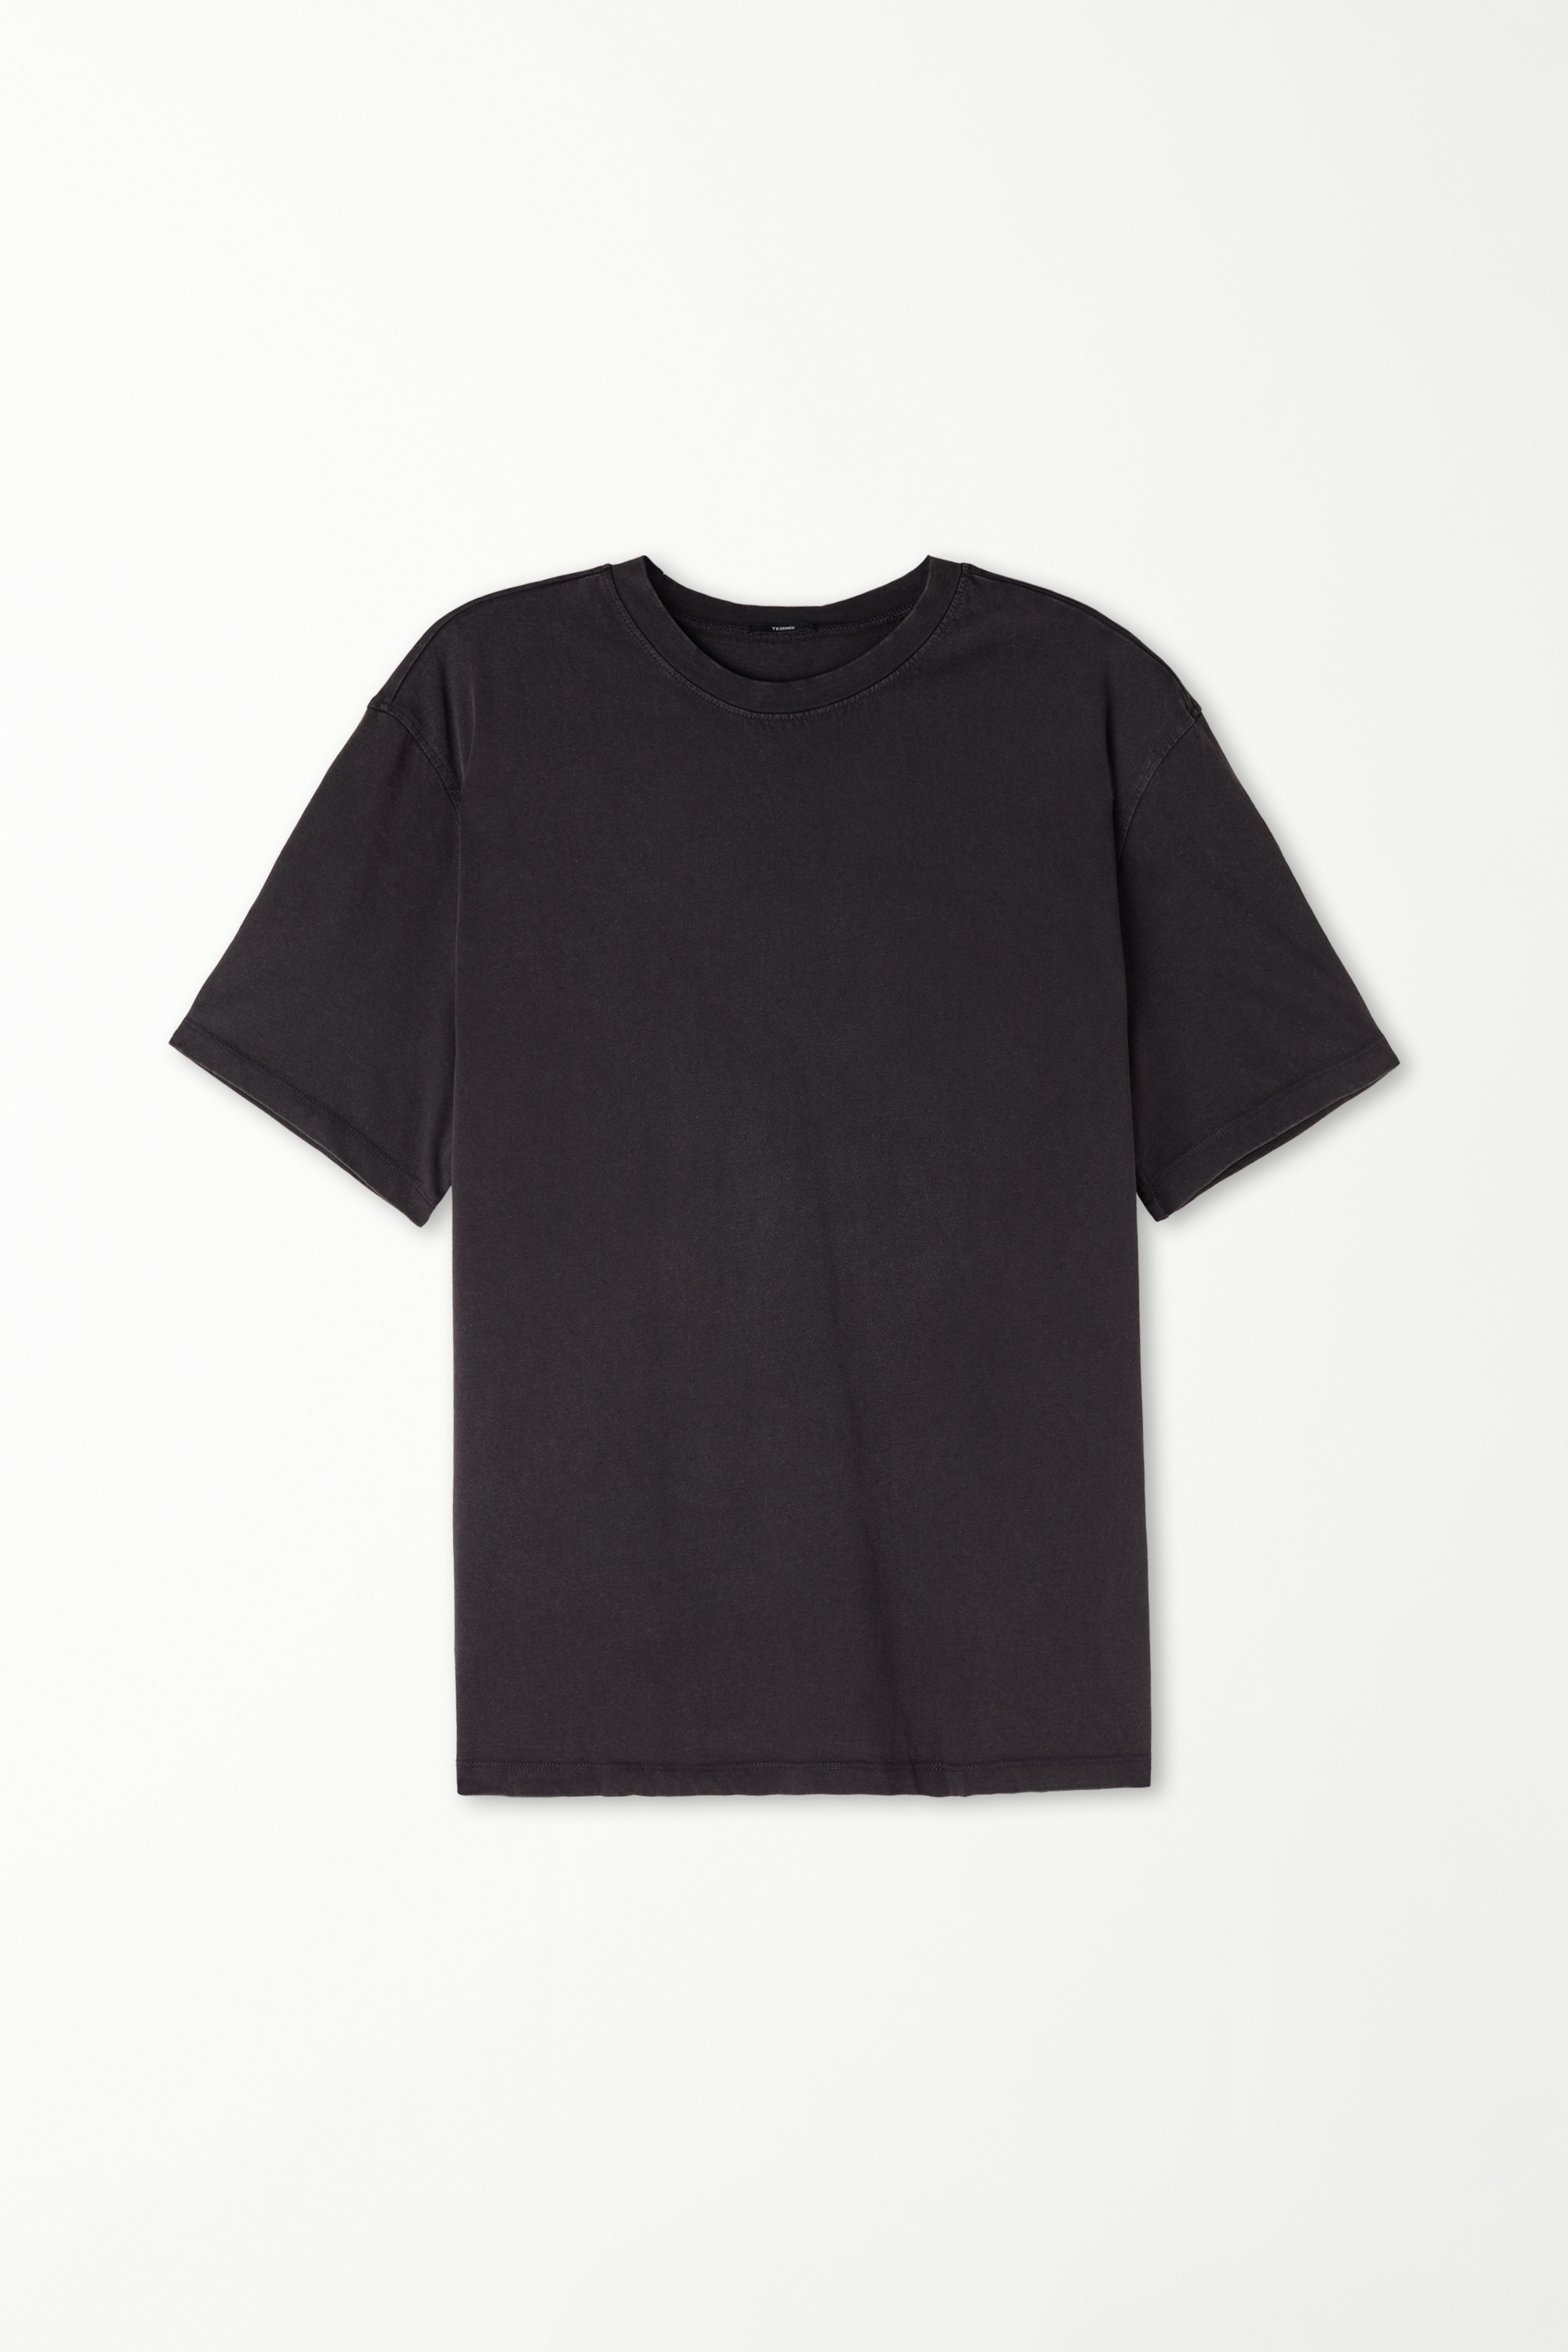 Rundhals-T-Shirt aus Baumwolle in verwaschener Optik